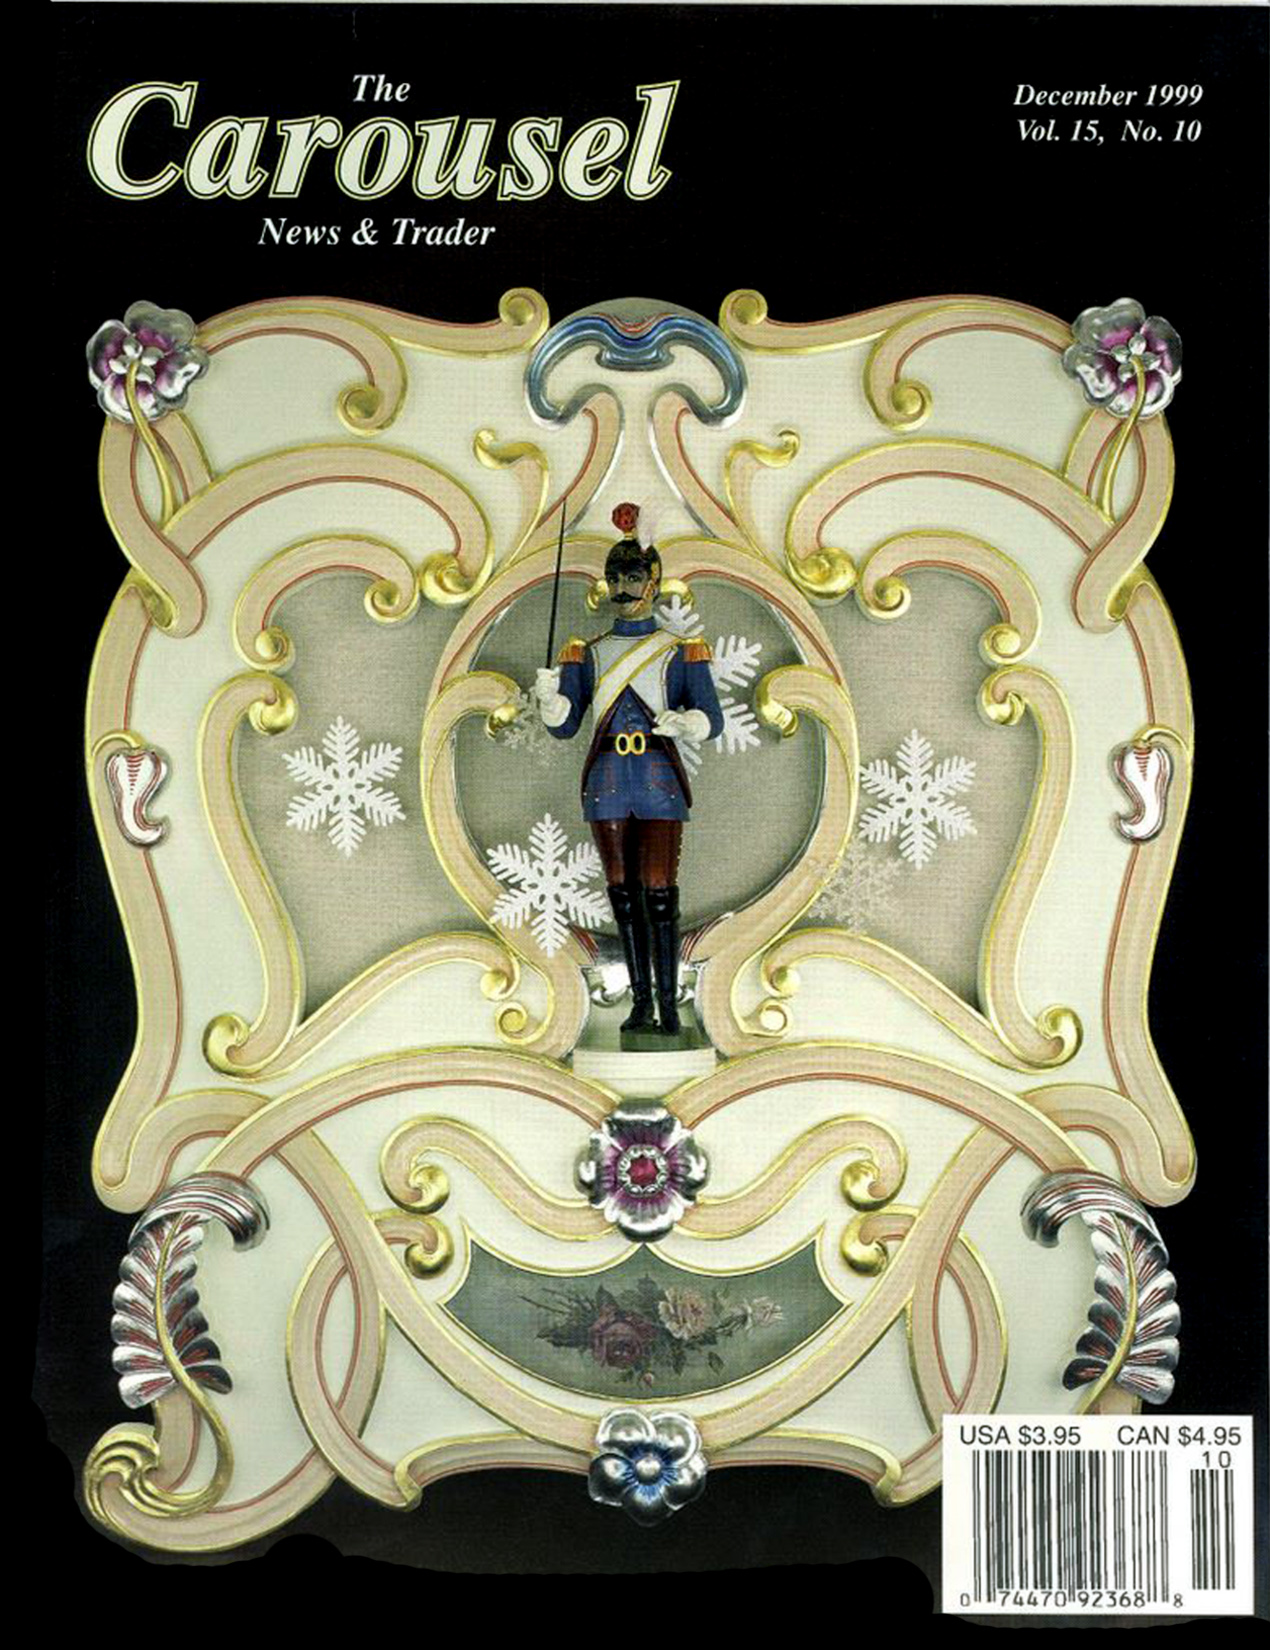 Issue No. 10, Vol. 15 – December 1999